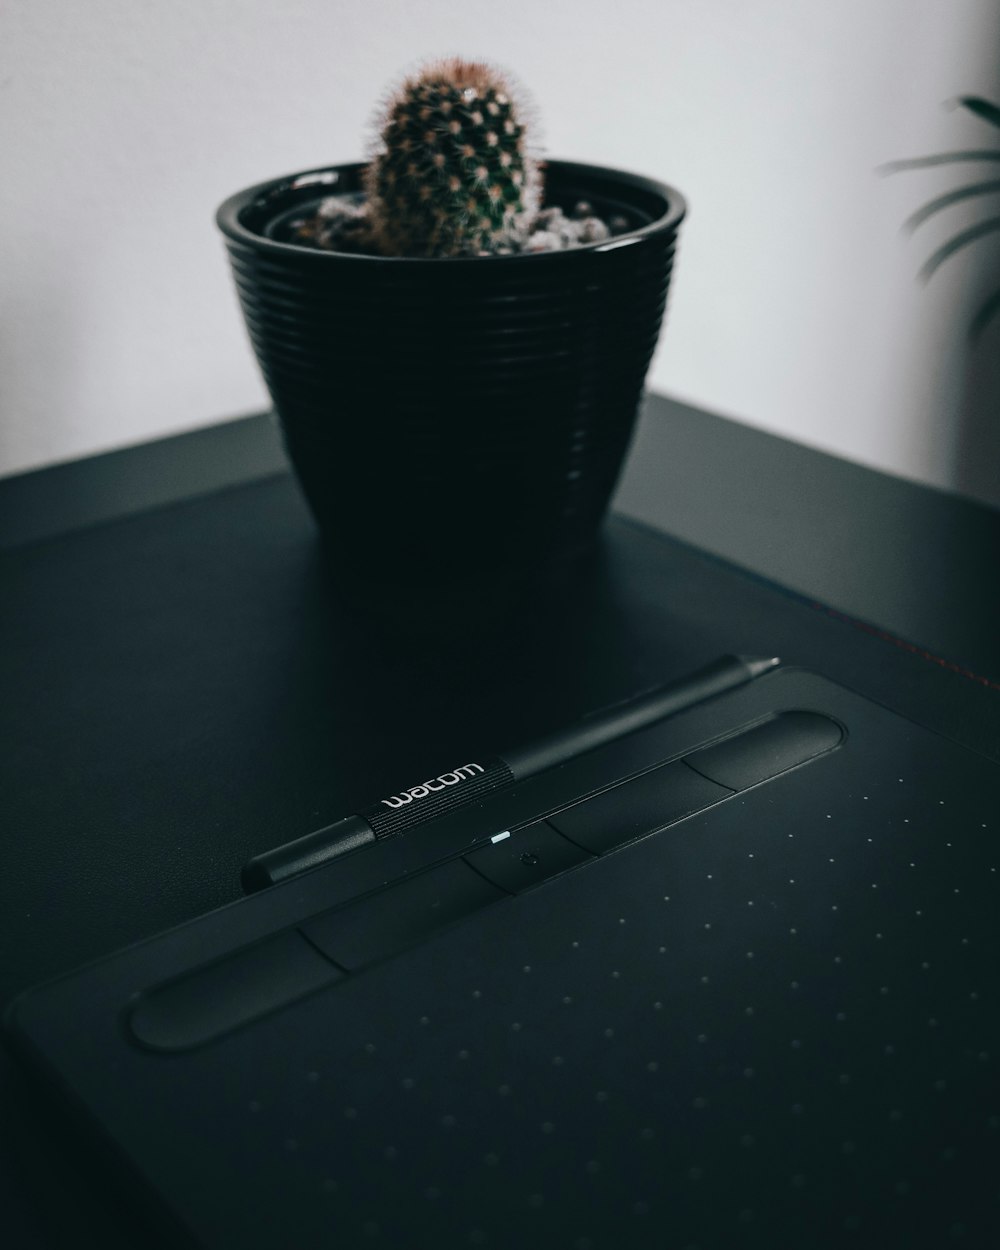 stylo noir sur table noire